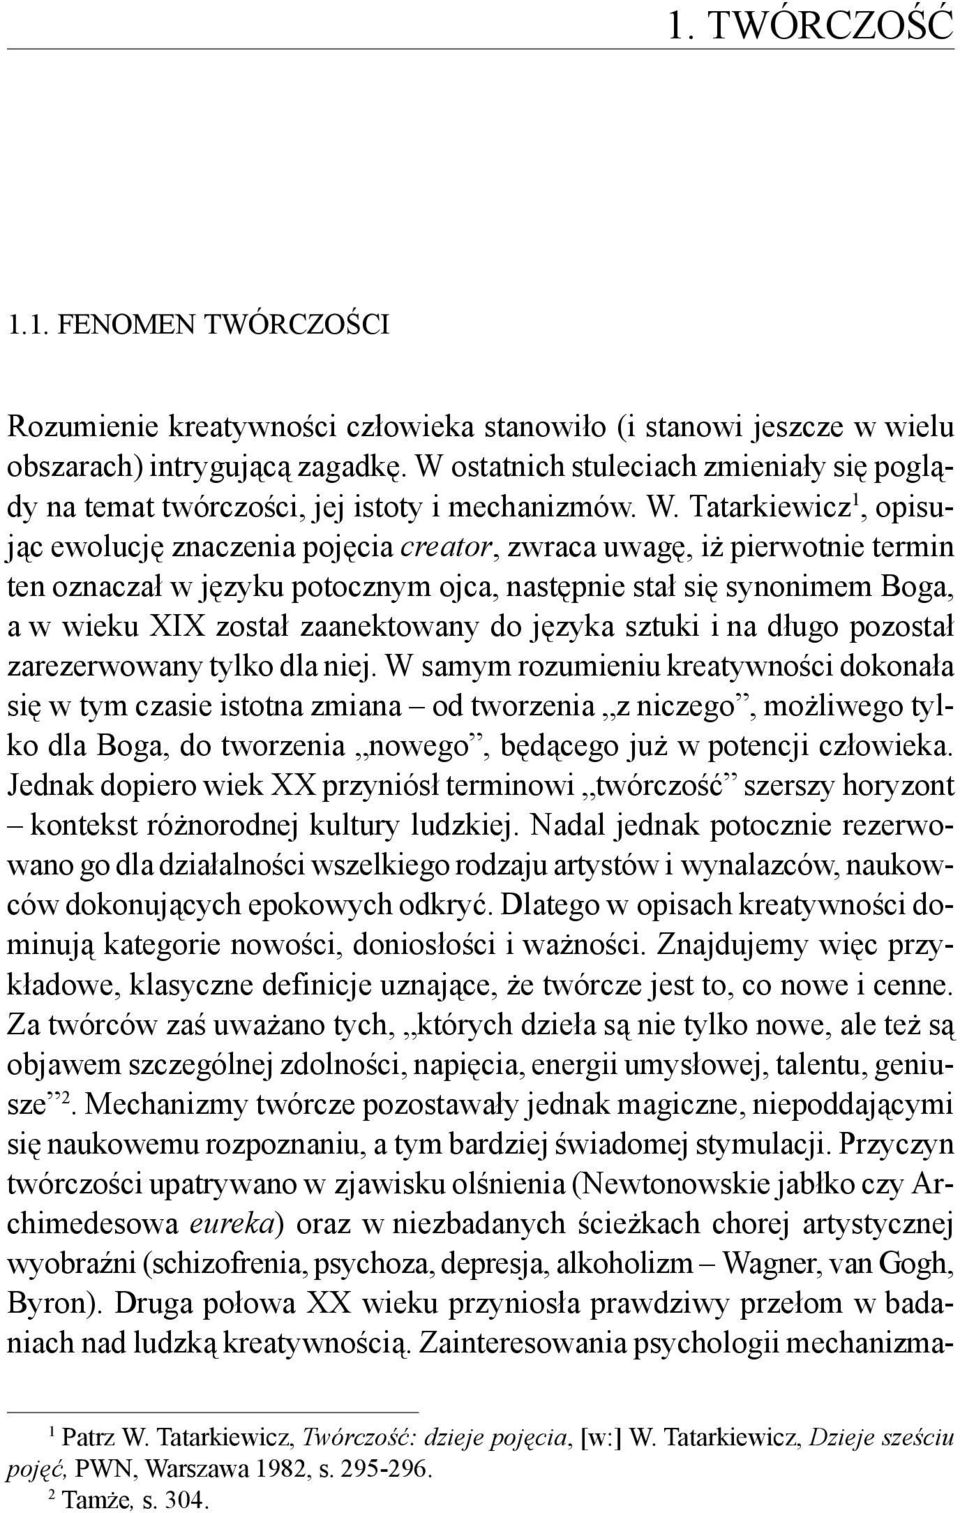 Tatarkiewicz 1, opisując ewolucję znaczenia pojęcia creator, zwraca uwagę, iż pierwotnie termin ten oznaczał w języku potocznym ojca, następnie stał się synonimem Boga, a w wieku XIX został